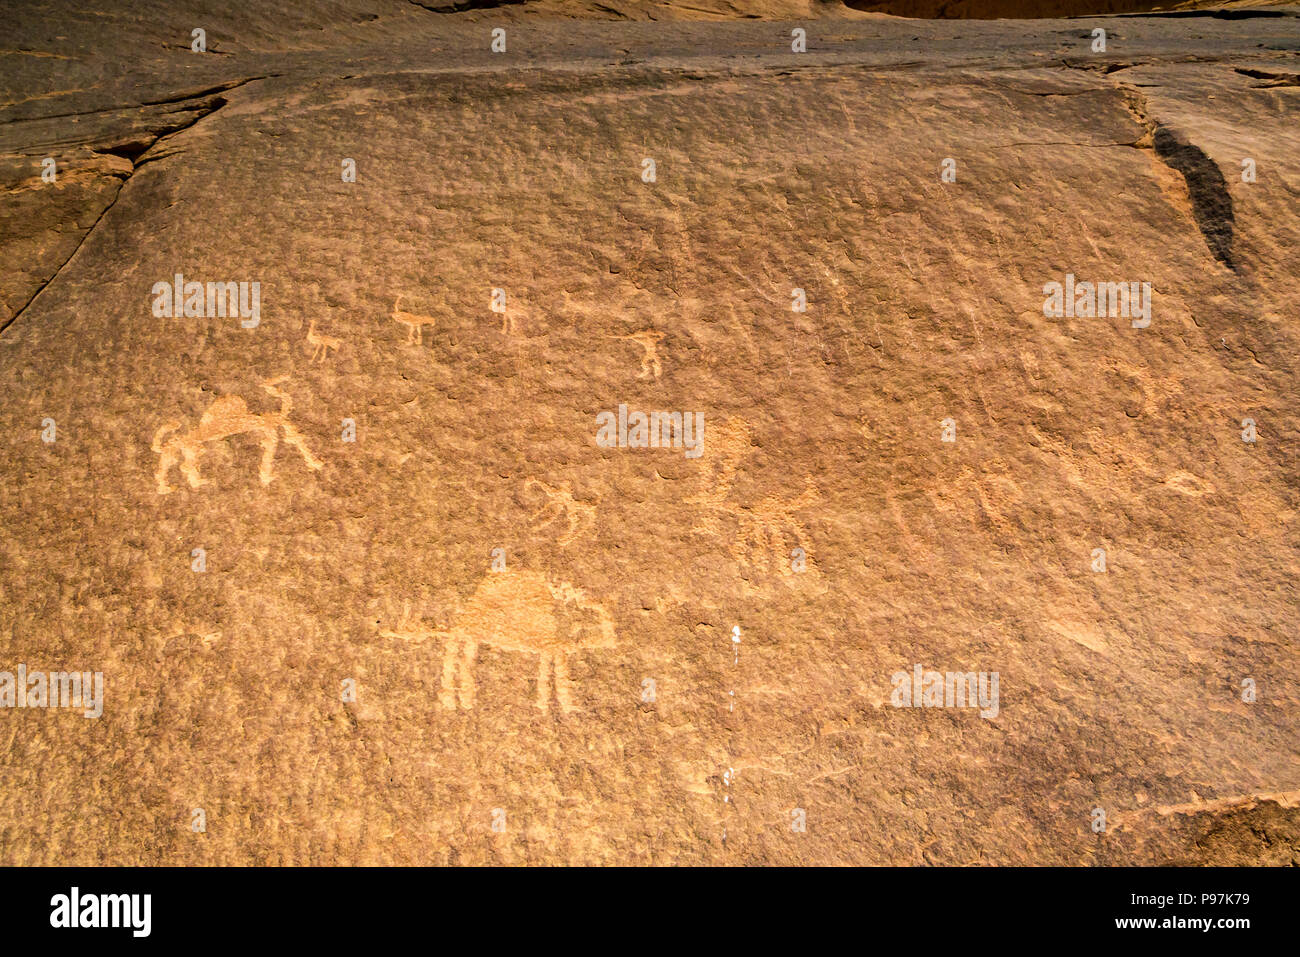 Close up petroglyph incisioni rupestri del cammello e uccelli, Wadi Rum vallata desertica, Giordania, Medio Oriente Foto Stock